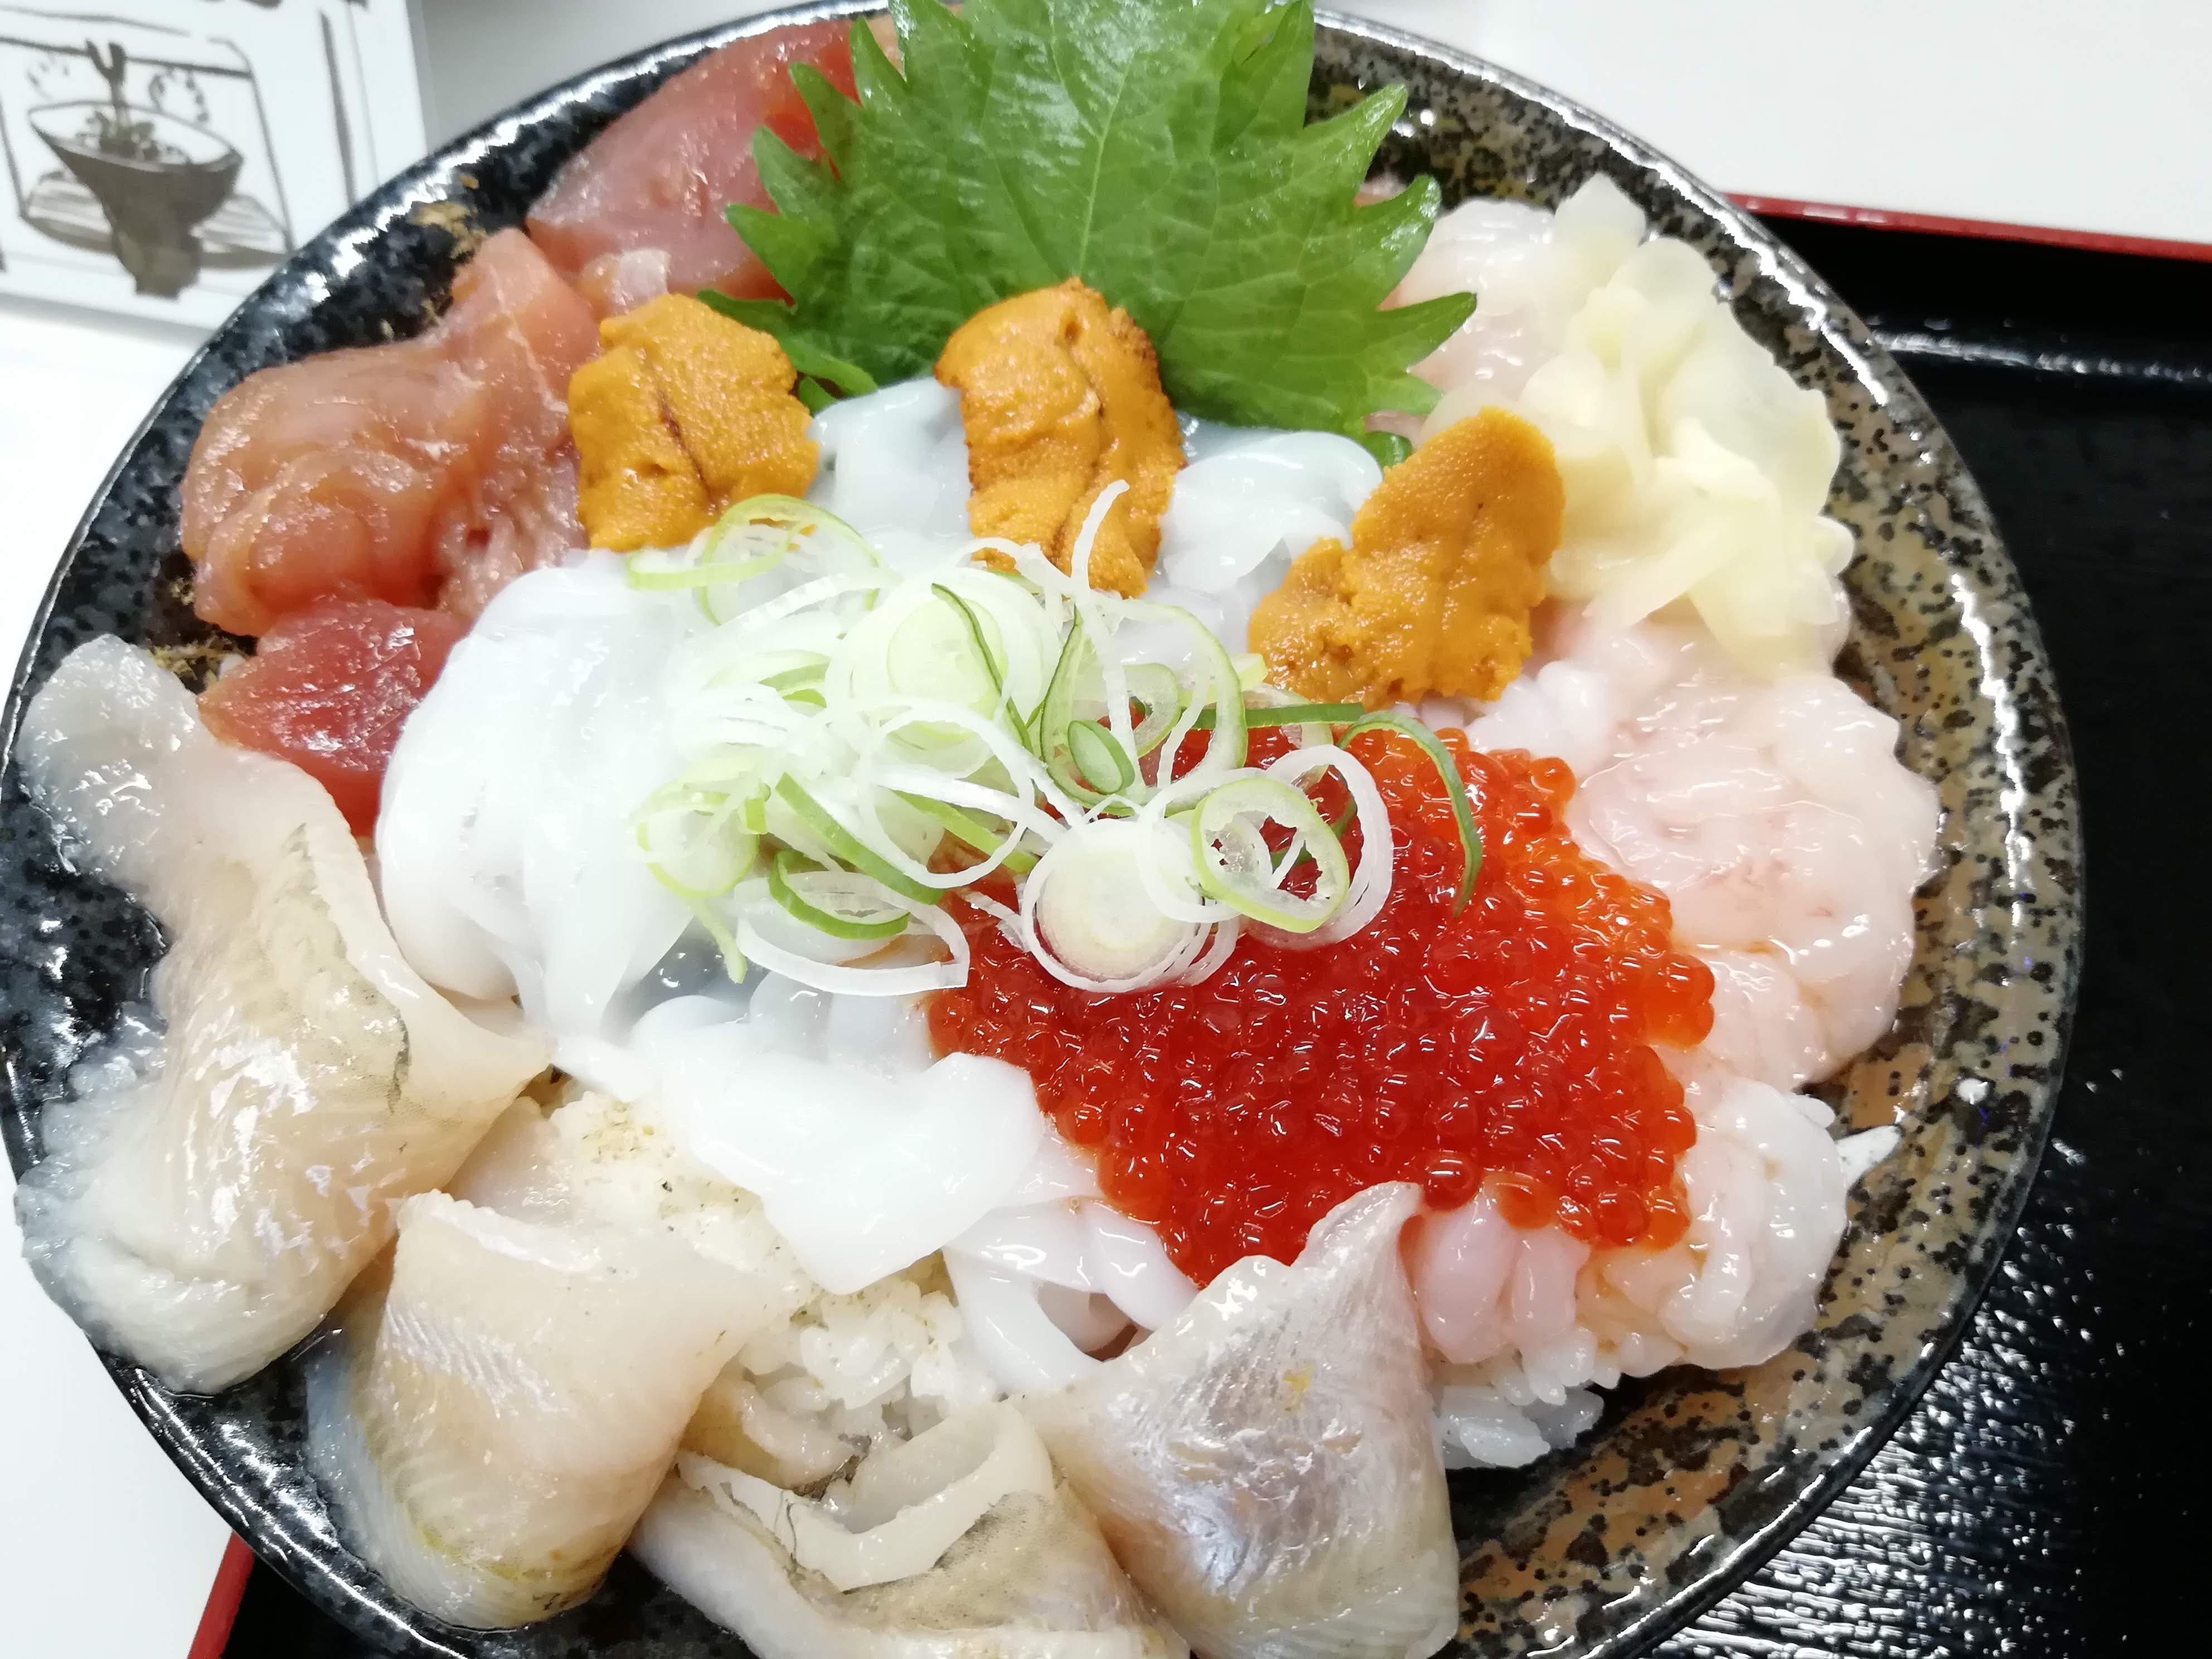 米子市 イオンにある山芳亭の海鮮丼はランチにおすすめ 気になるメニューも写真付きで紹介